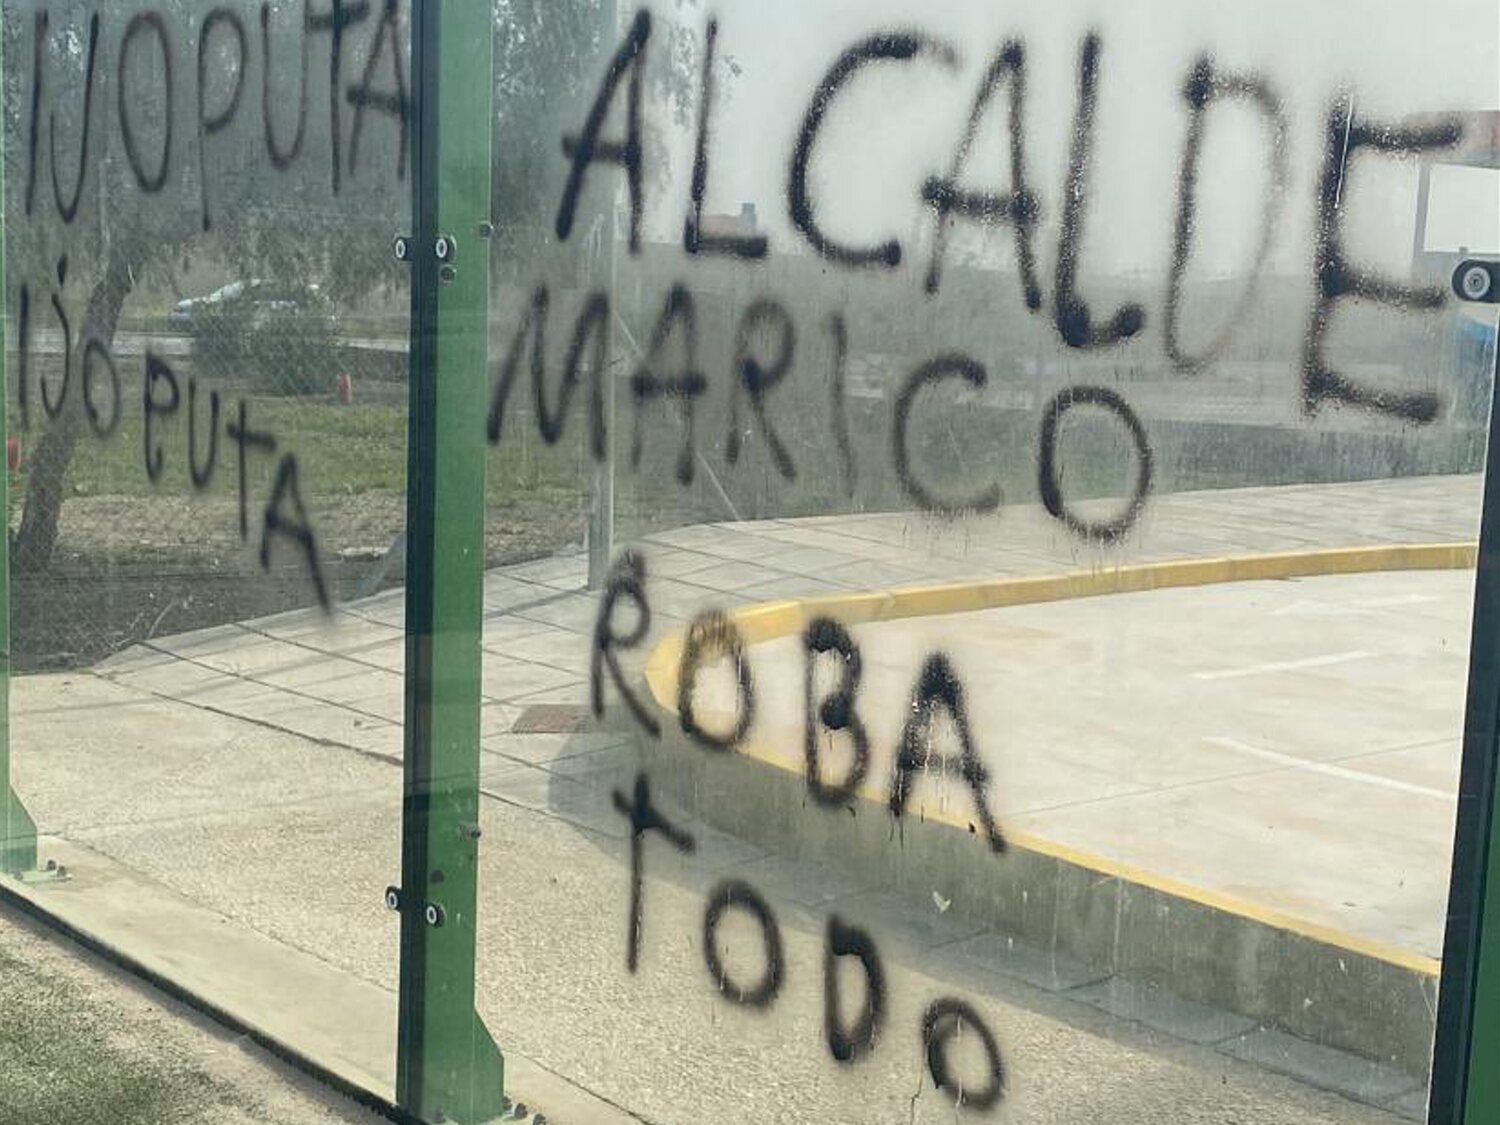 Pinturas homófobas contra el alcalde de Los Molares (Sevilla) en un polideportivo municipal